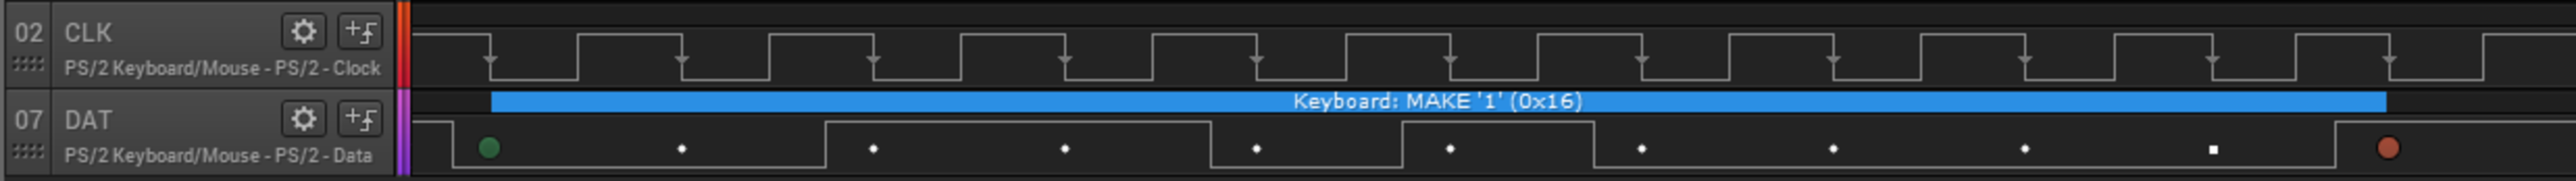 Keypress wave form